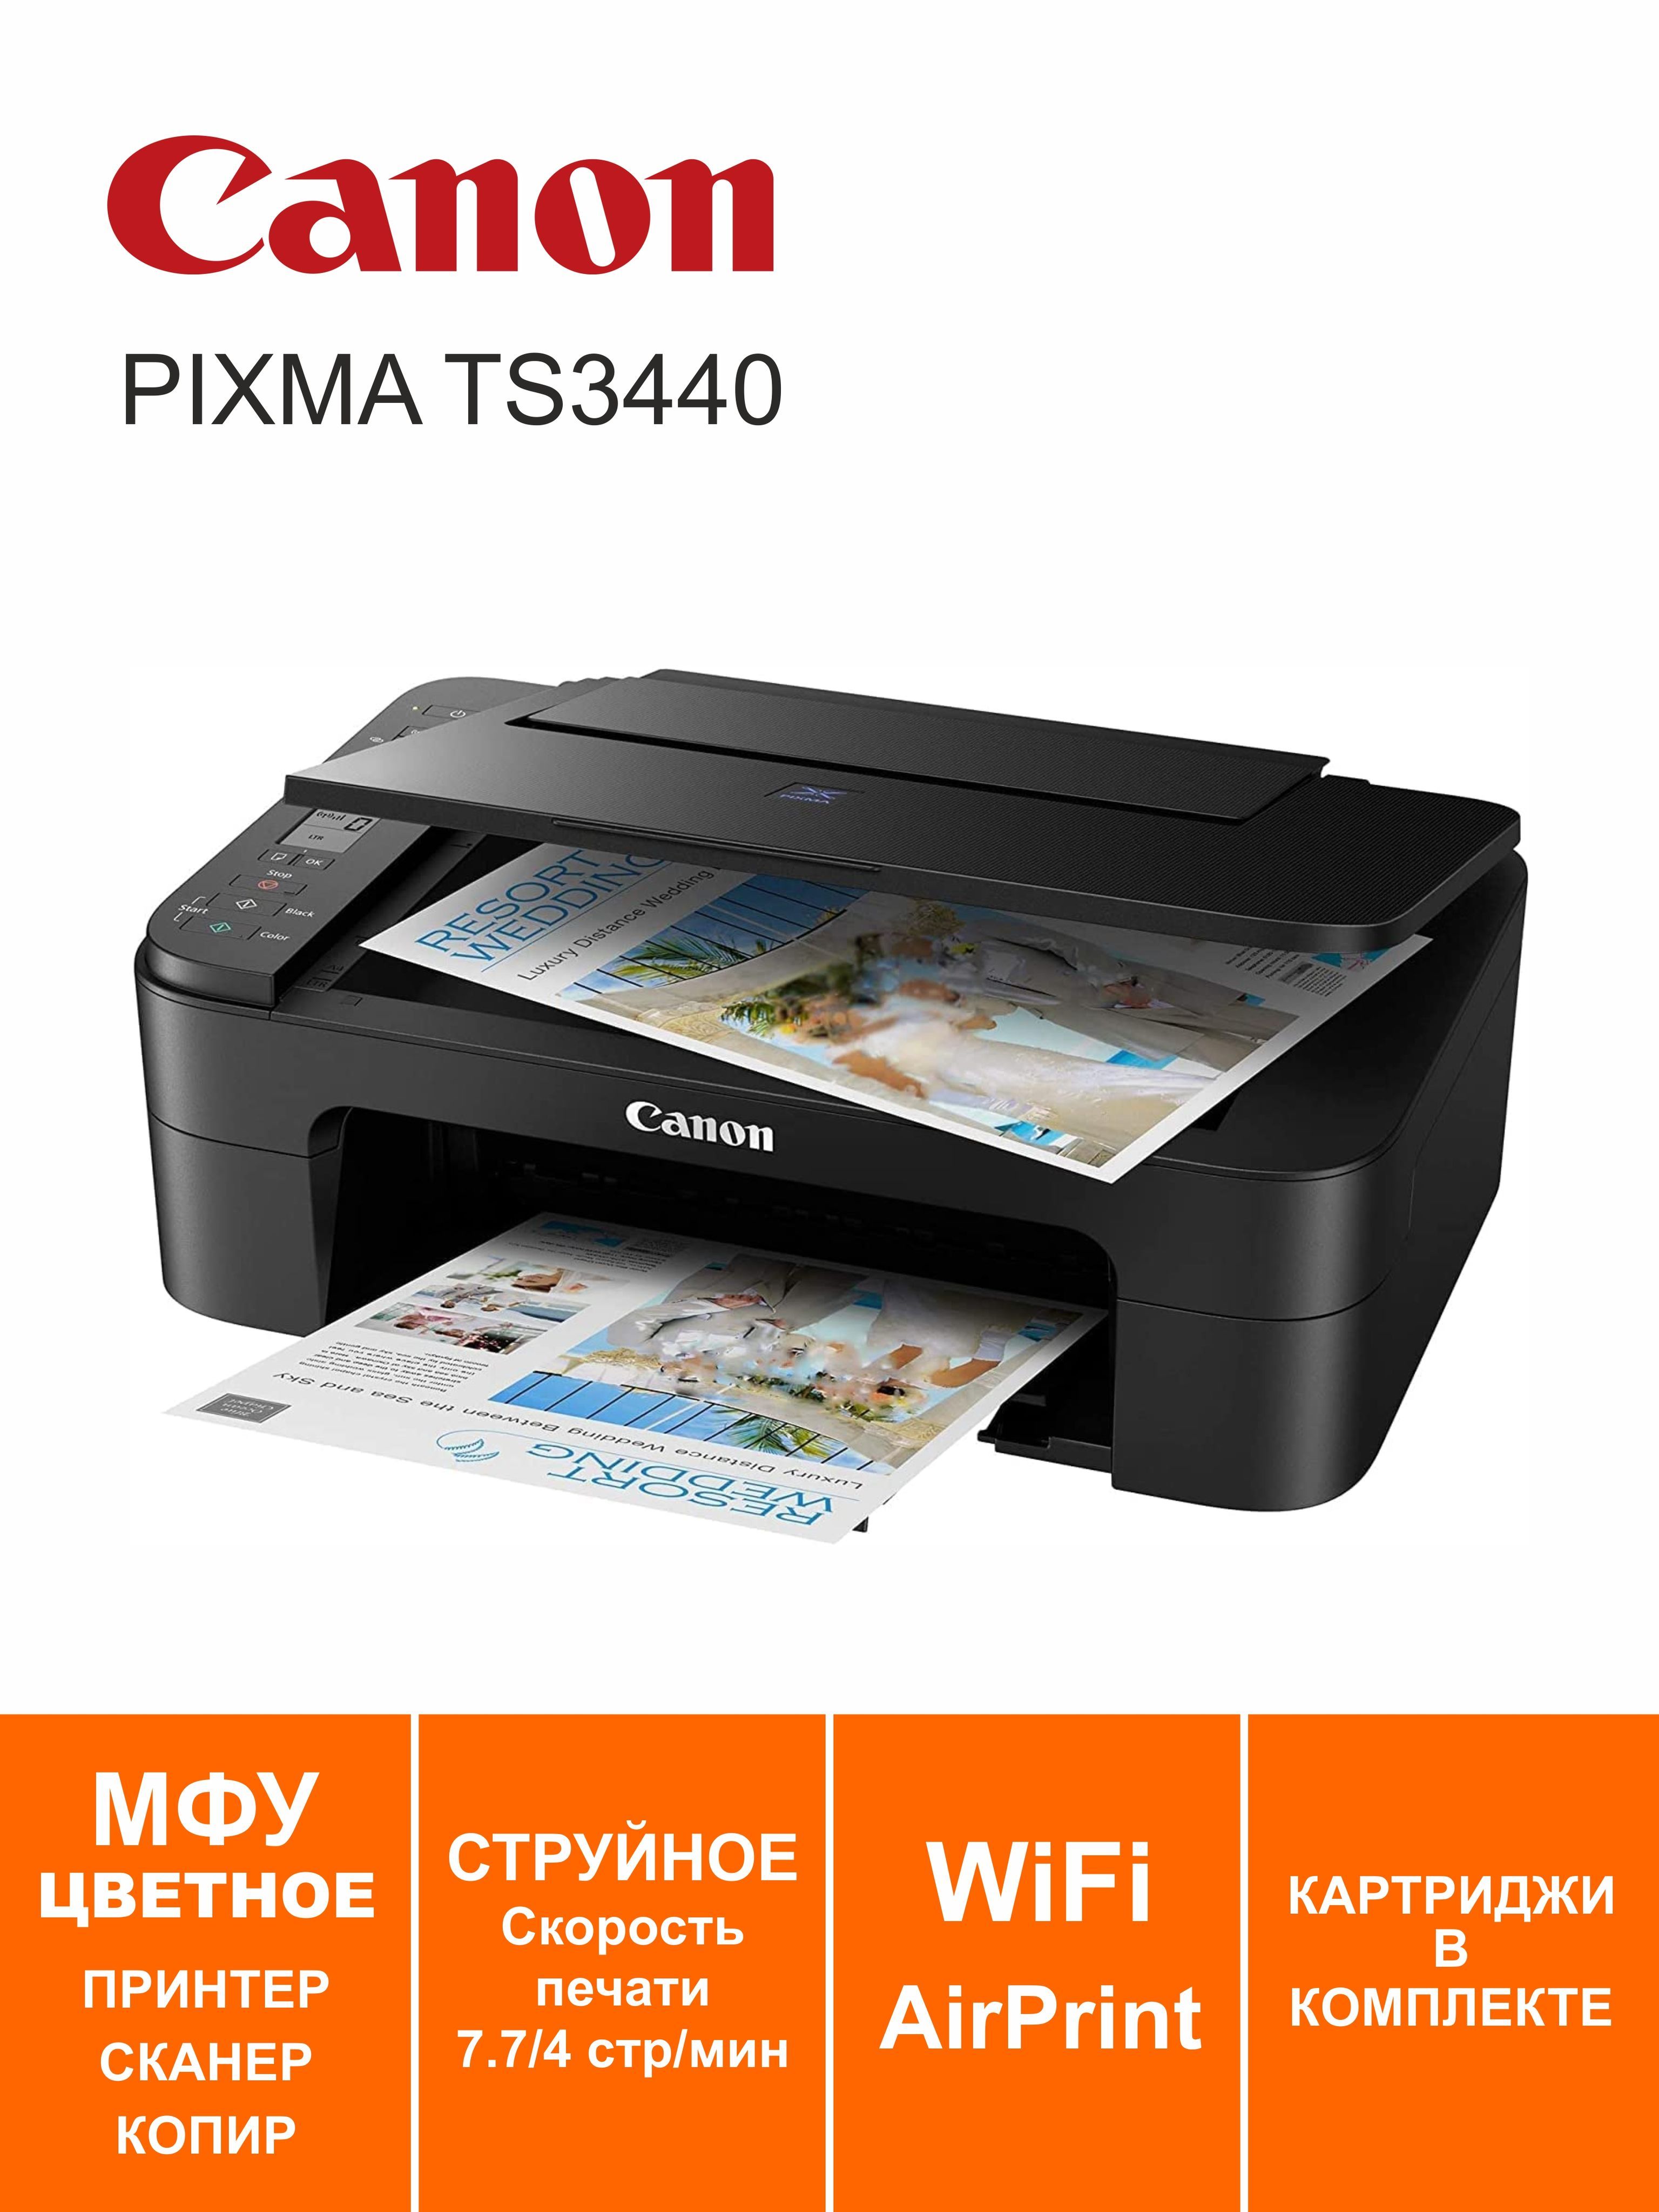 PIXMA ts3440 картридж. Краска для принтера Canon ts3440. Может ли принтер Canon ts3440 печатать плотность 330. Как сканировать на принтере Canon TS 3440. Canon ts3440 купить